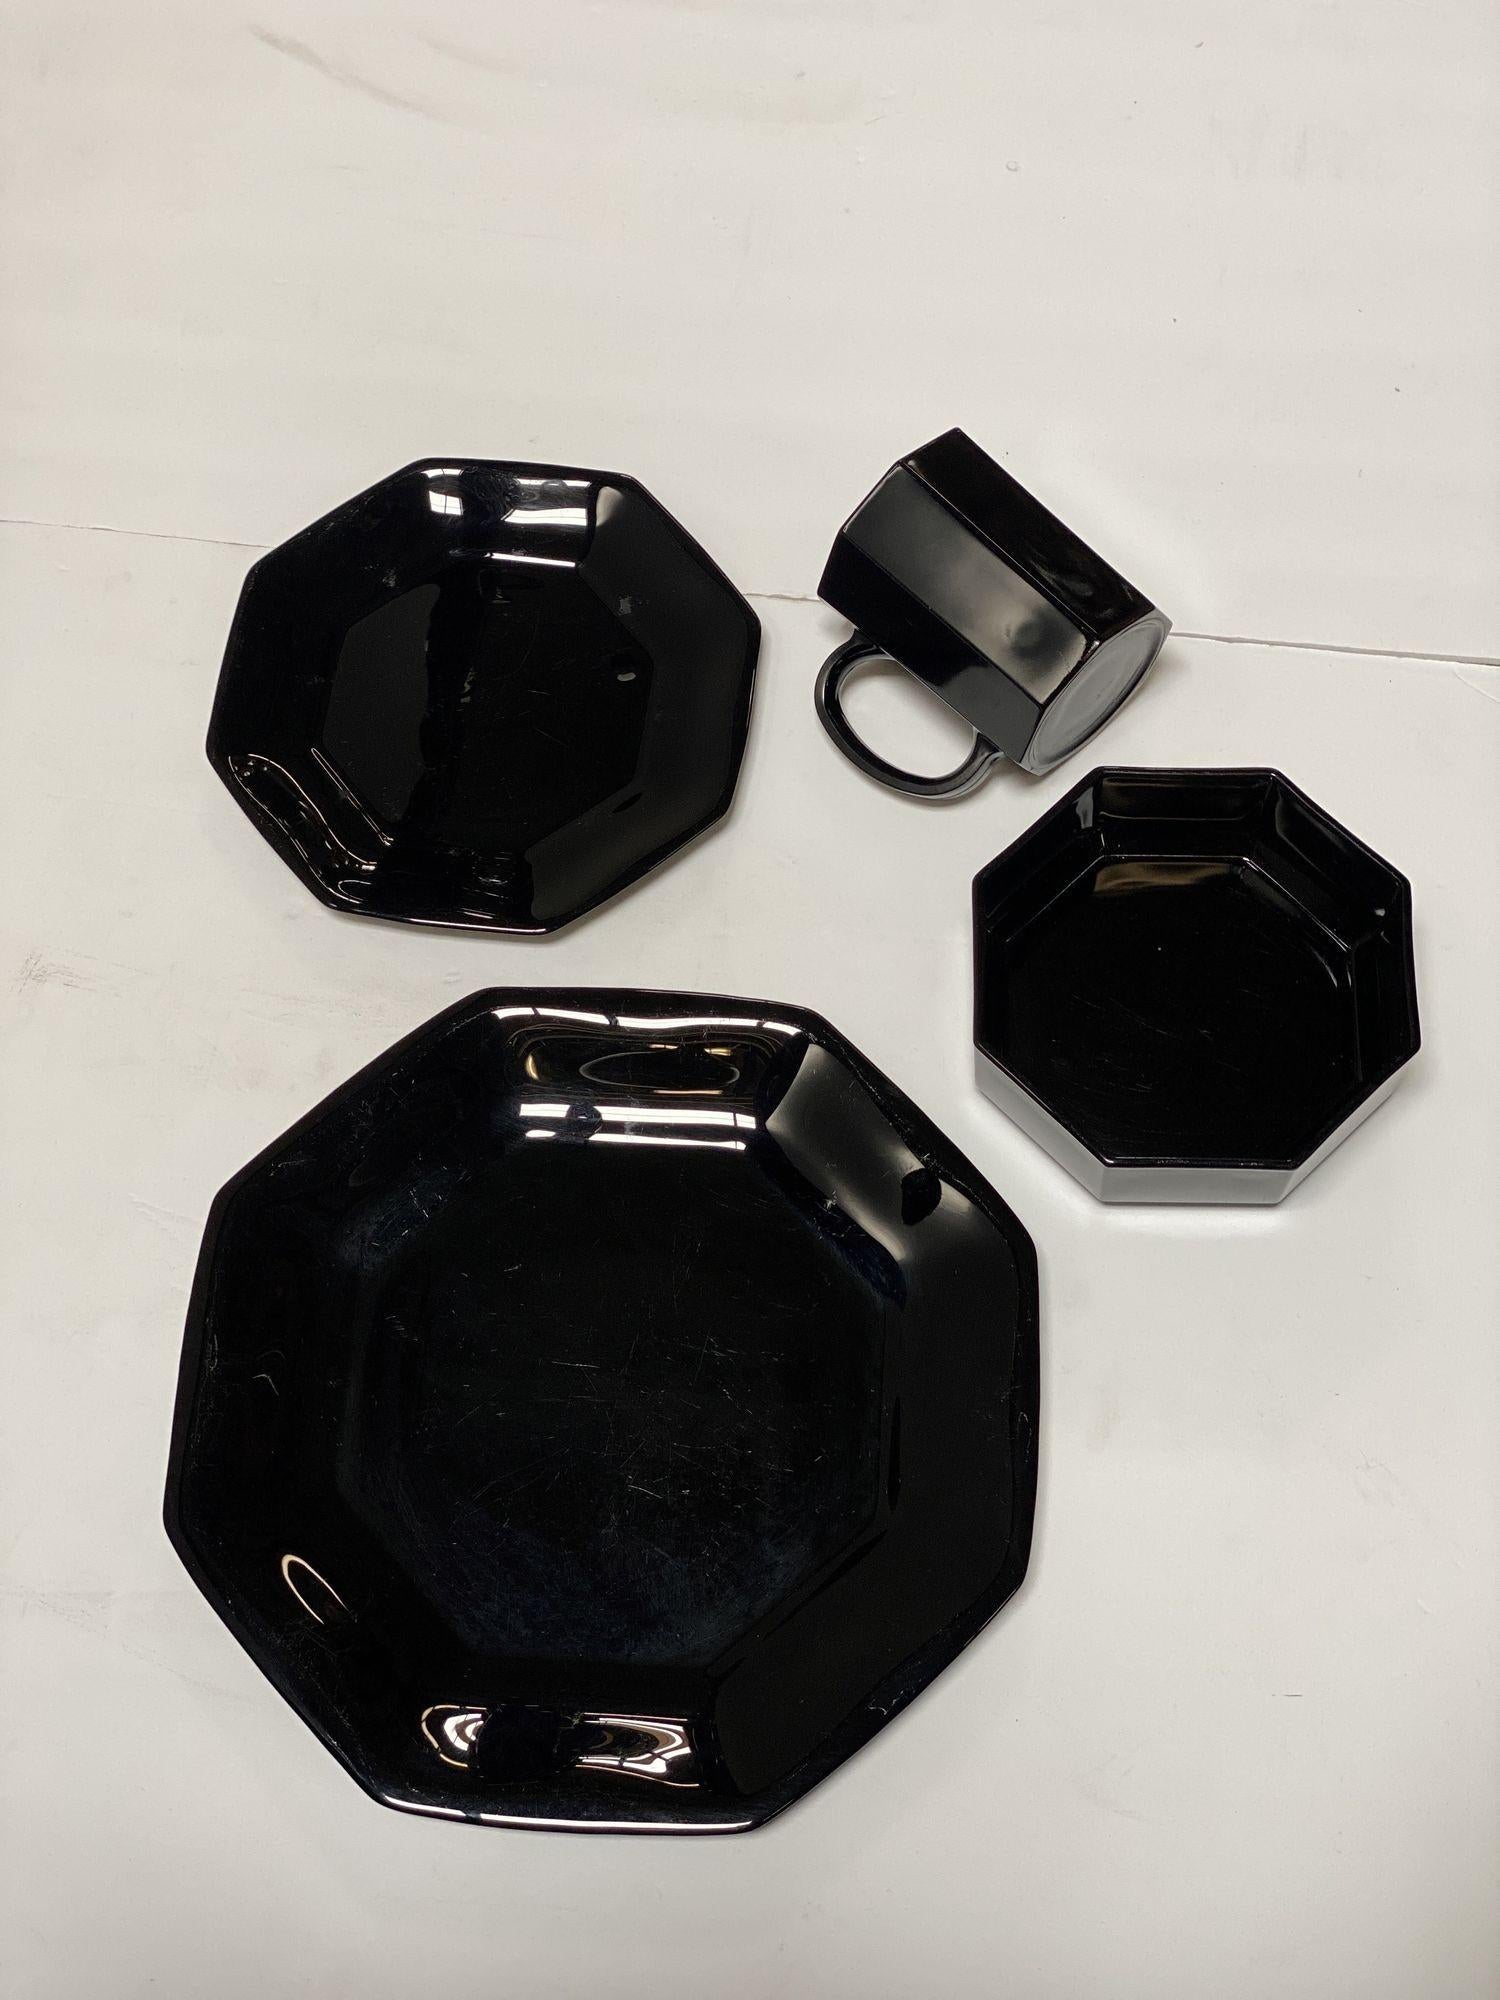 Service de vaisselle Octogonal noir du milieu du siècle, 20 pièces, fabriqué par Arcoroc France.
L'ensemble se compose de 
6 tasses (4